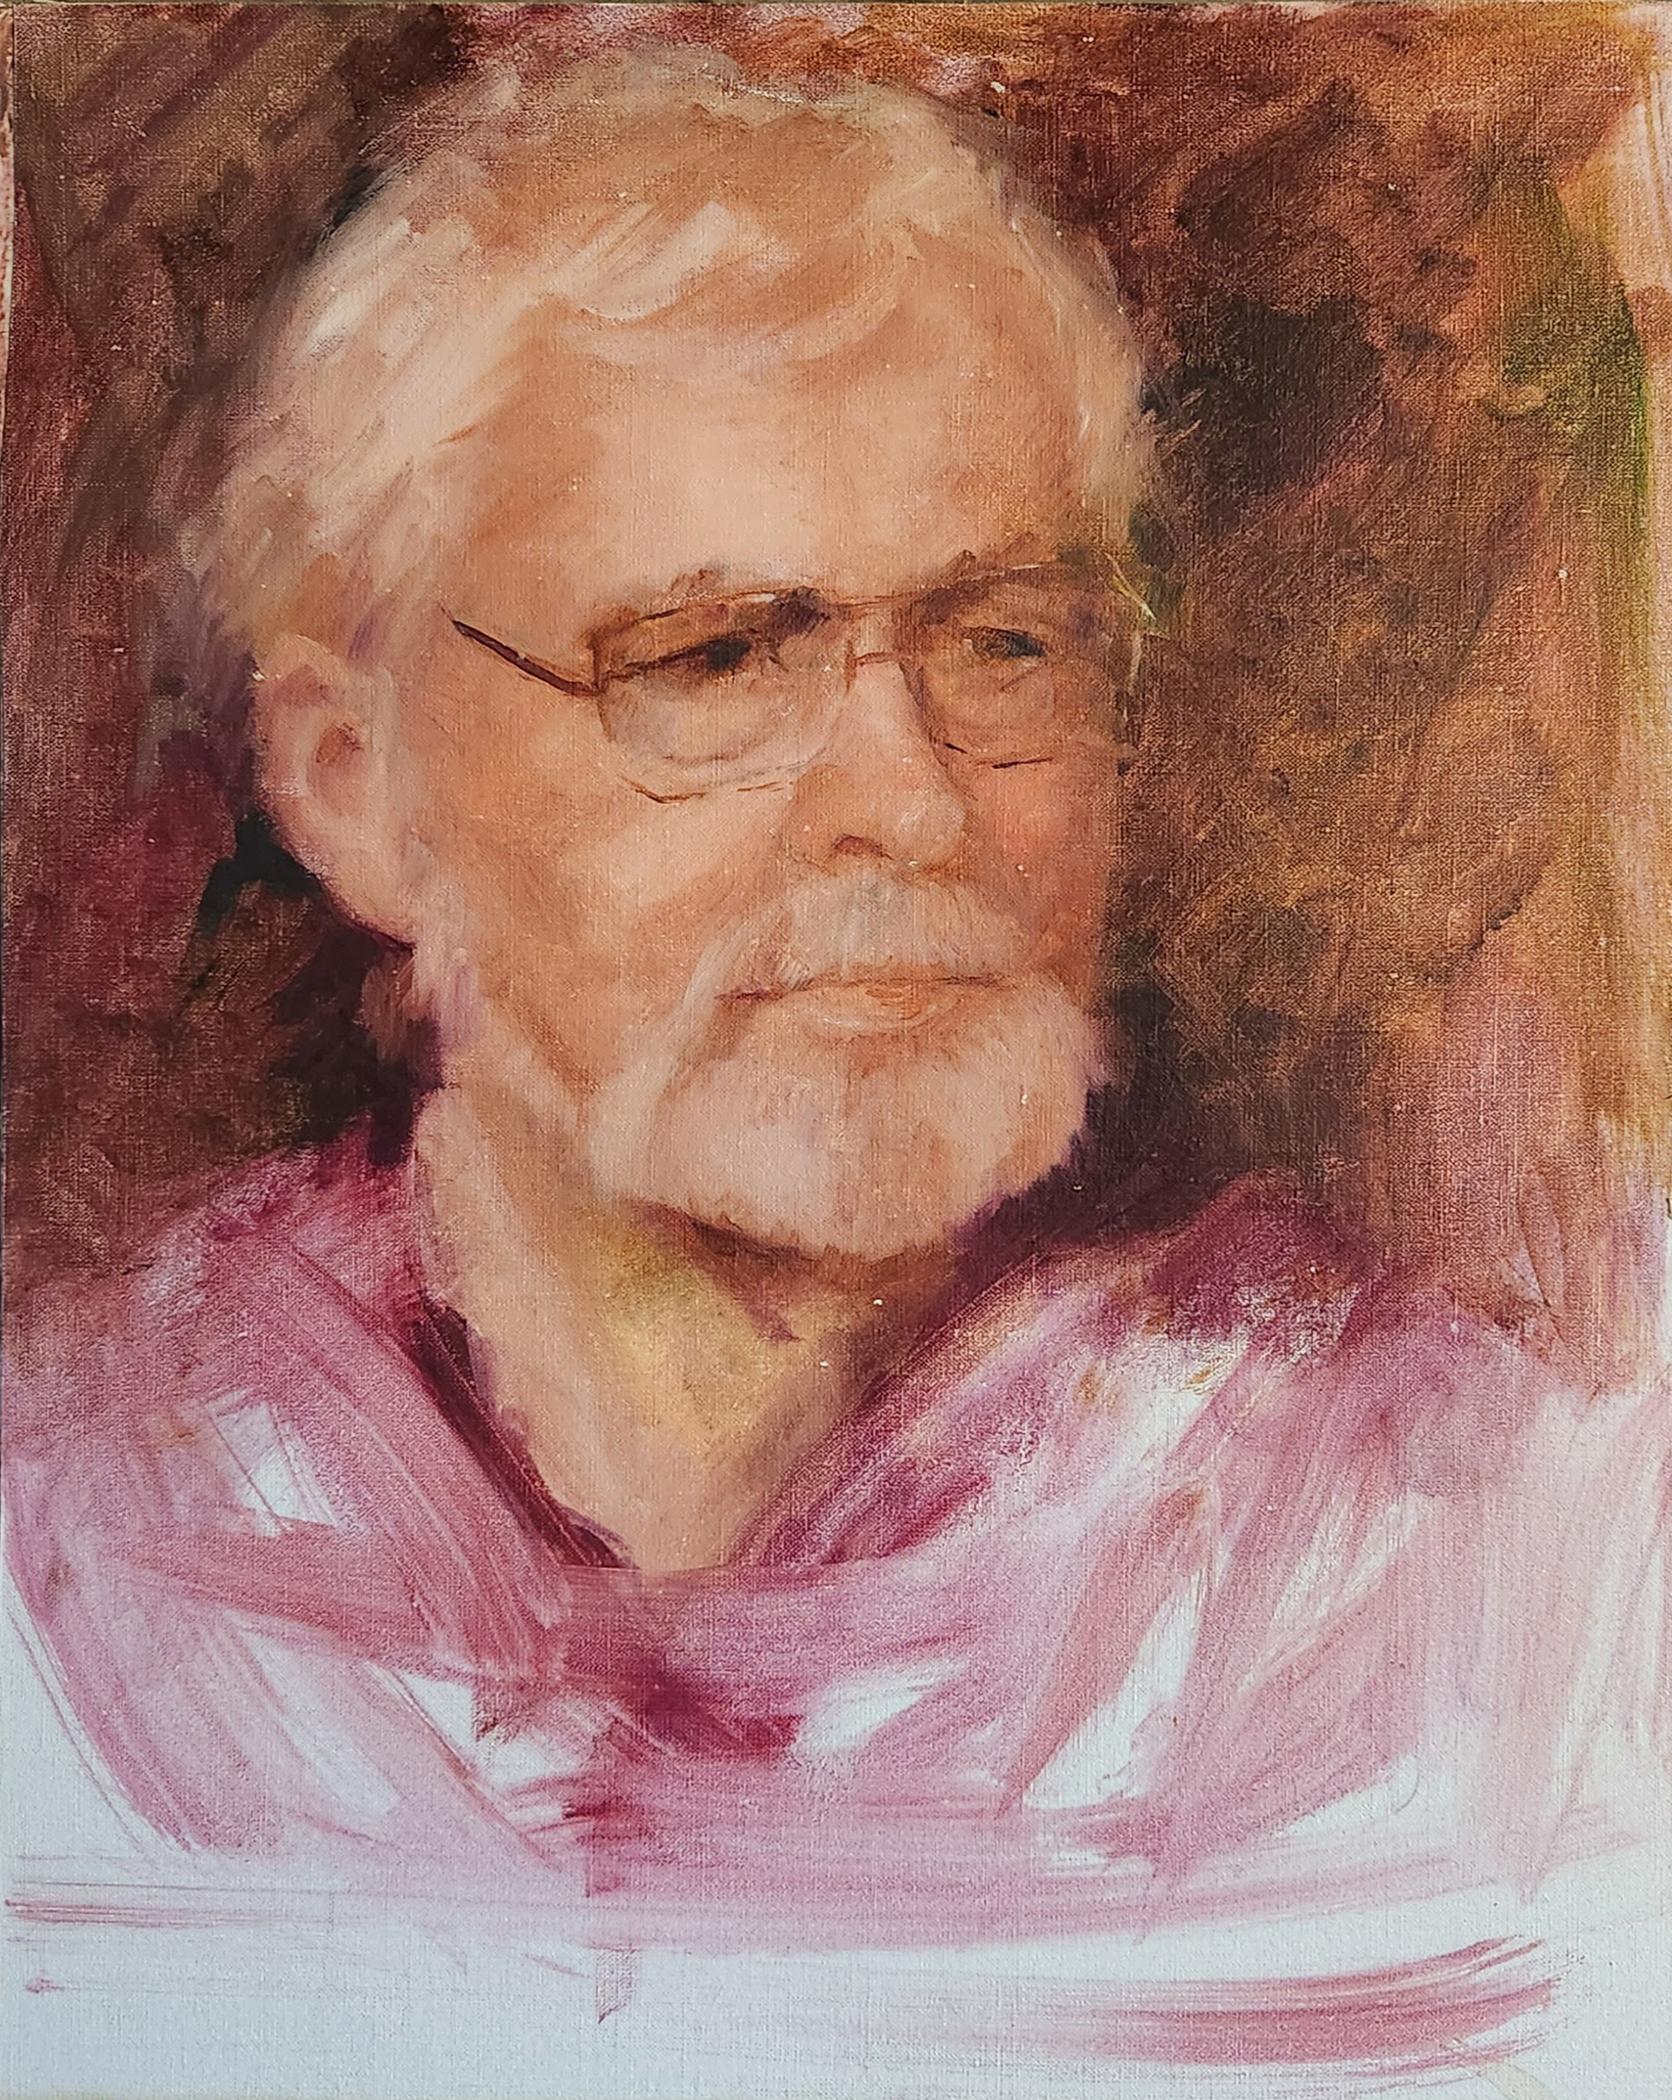 Charles Cross Portrait, 16x12" oil on board